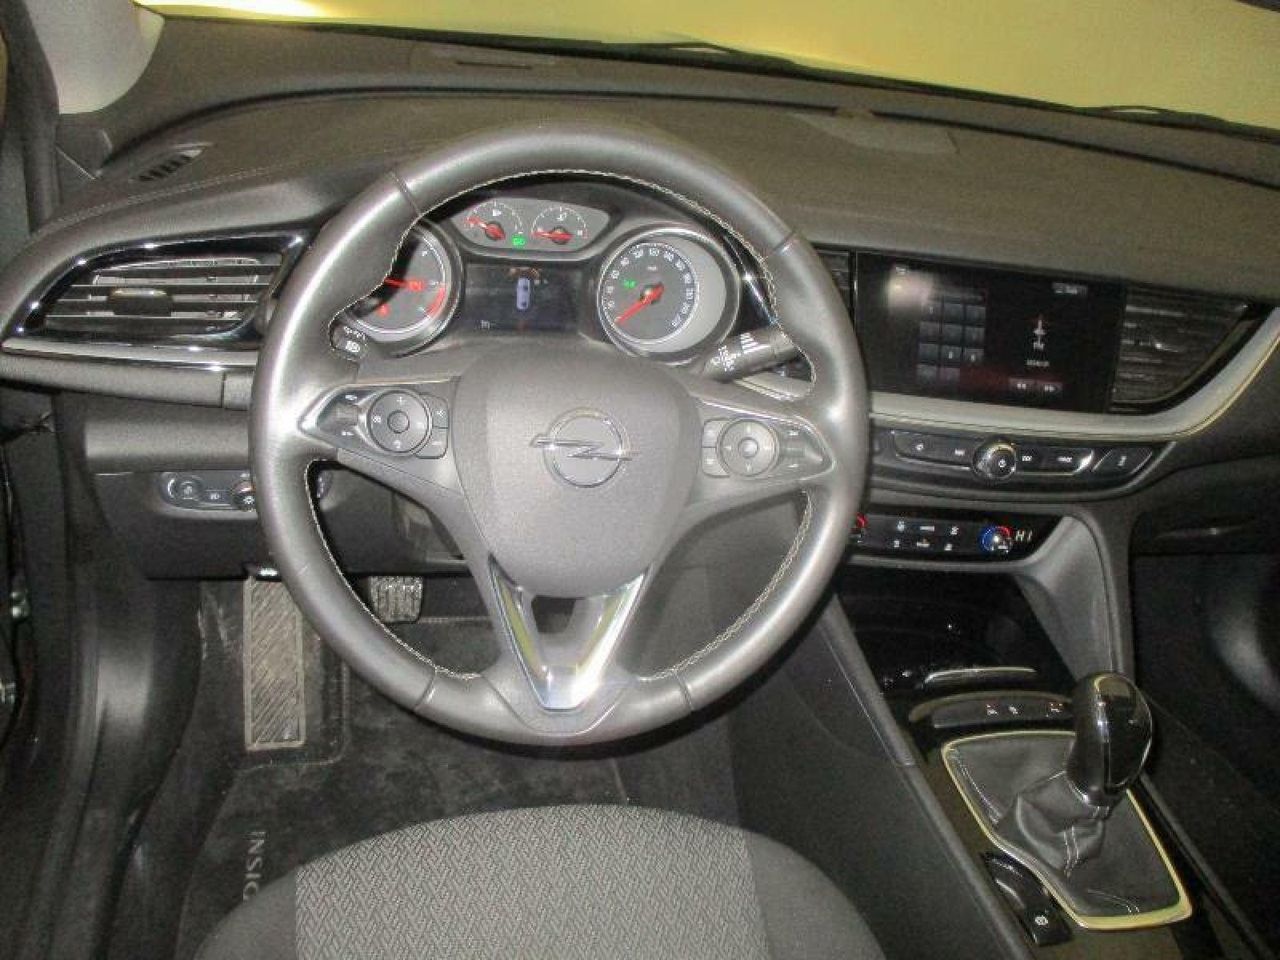 Foto Opel Insignia  4